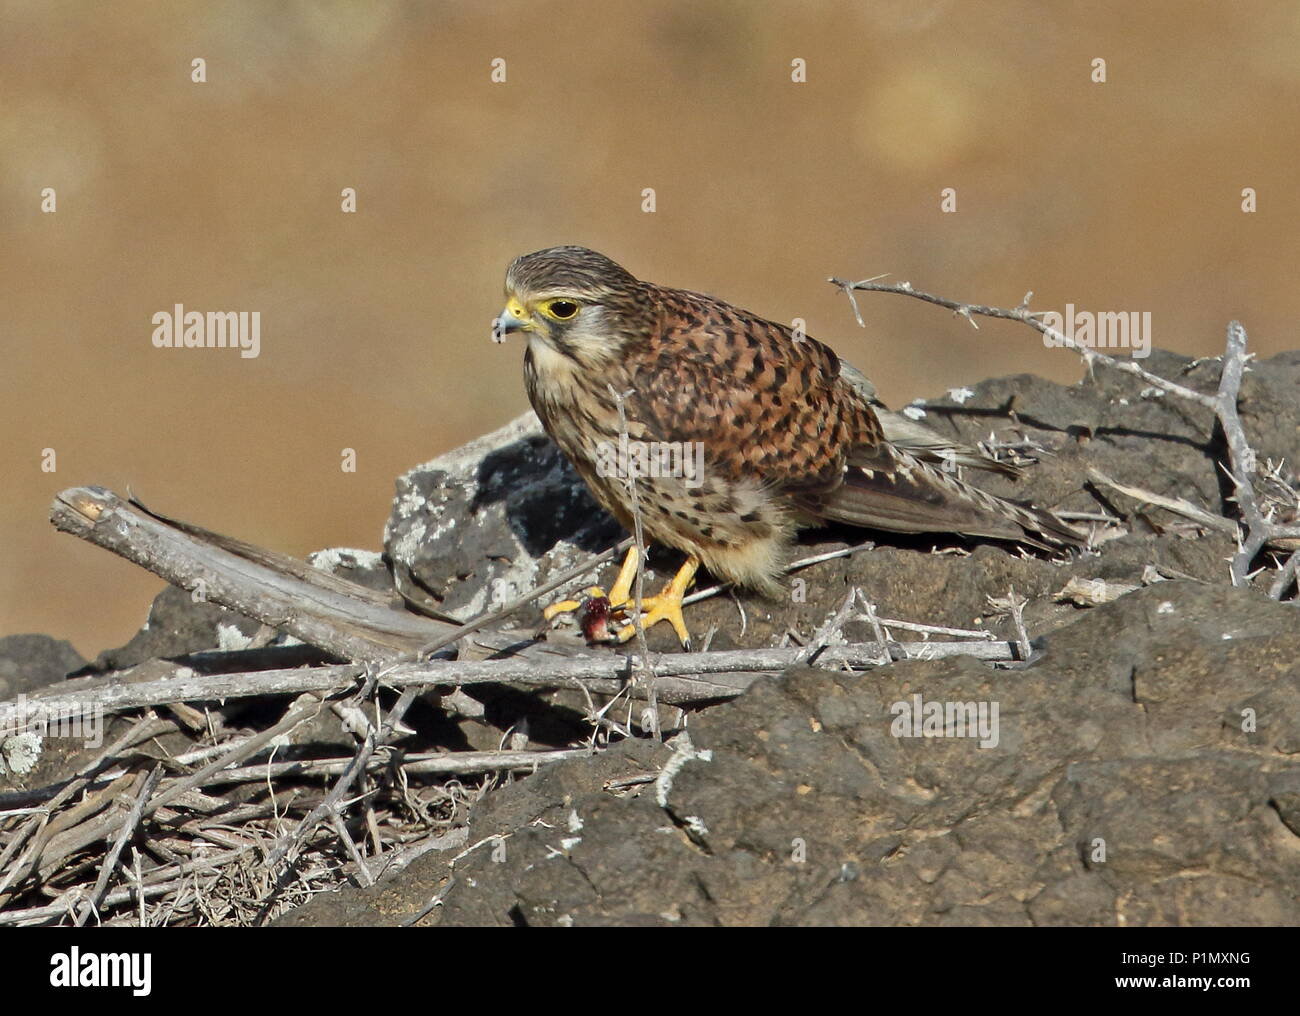 Faucon crécerelle (Falco tinnunculus alexandri) femelle adulte sur monticule rocheux lézard avec proie l'île de Santiago, Cap-Vert Avril Banque D'Images